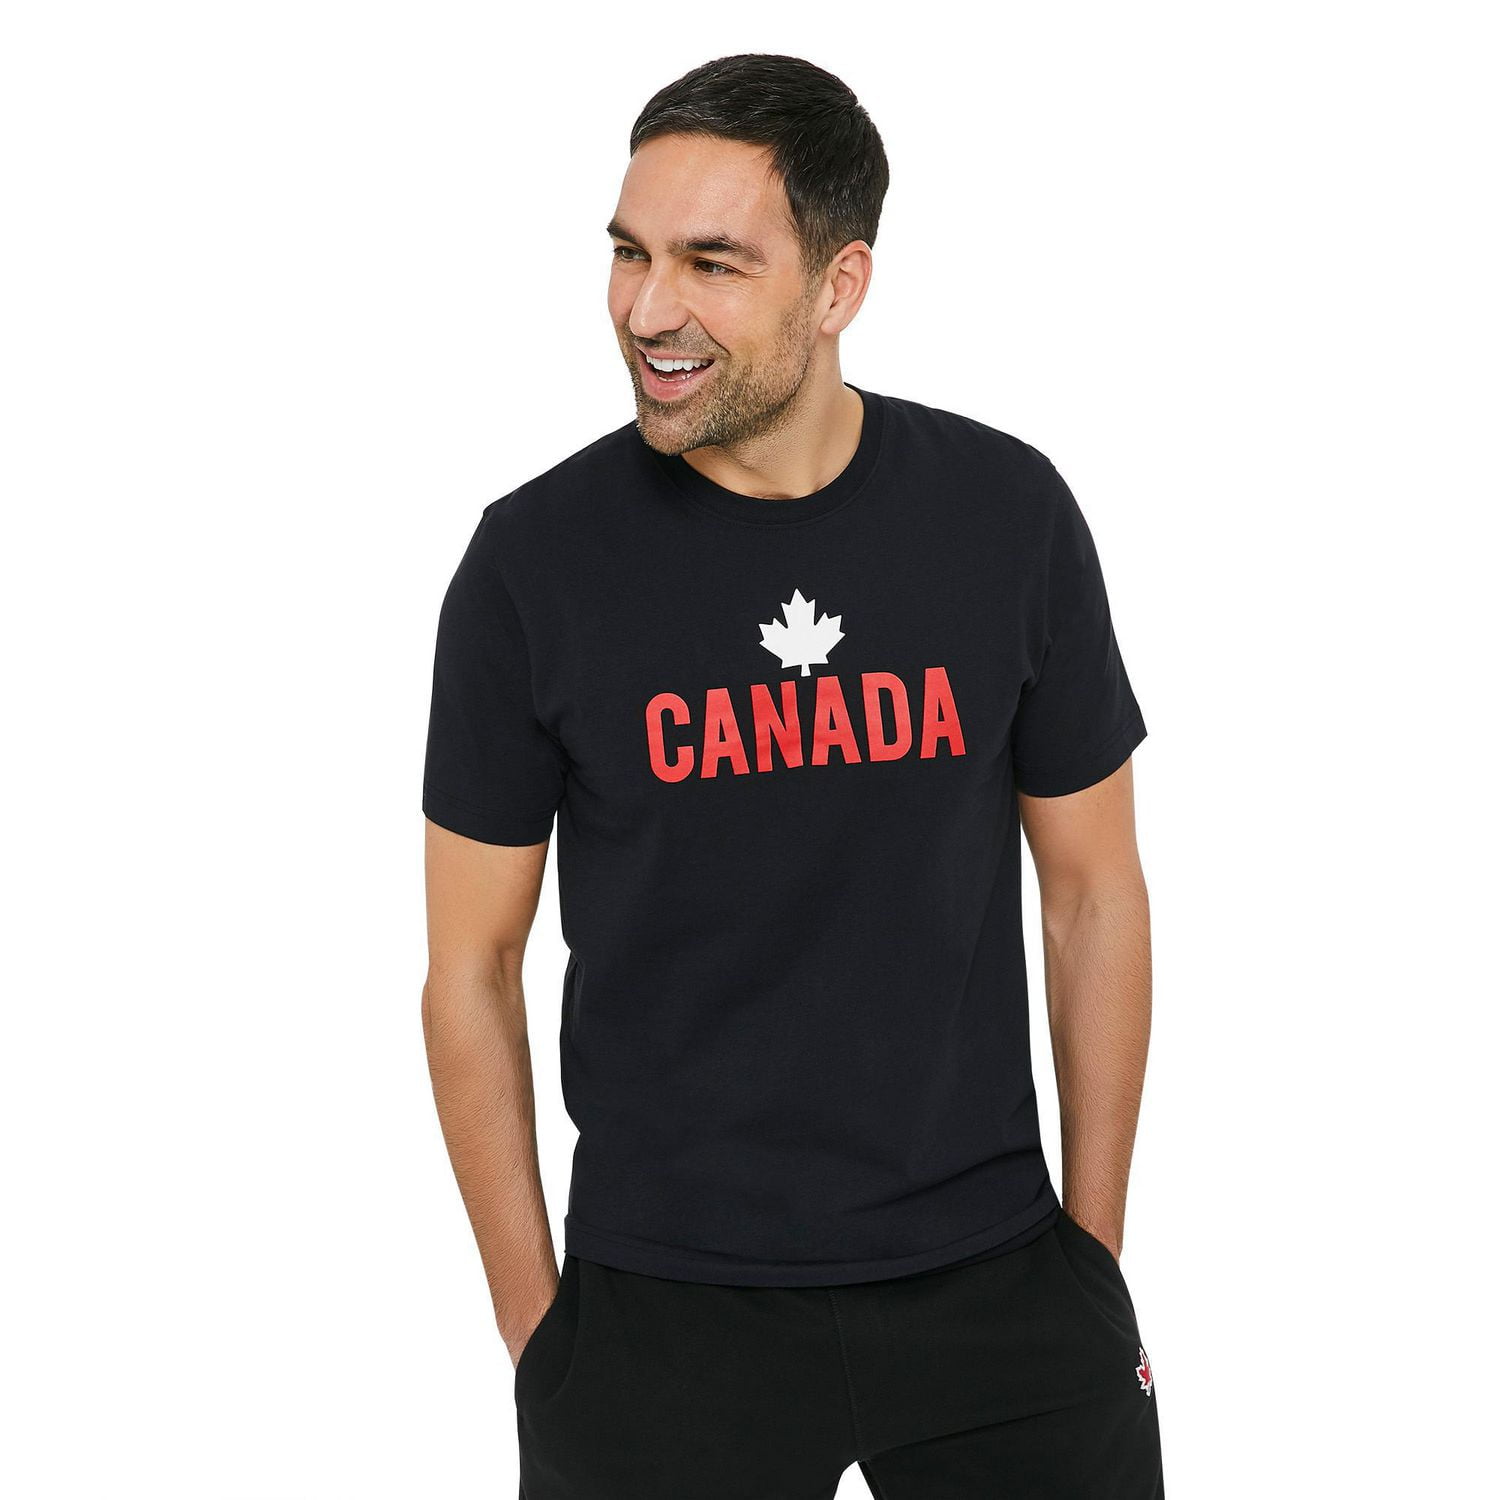 Garden T-shirt, Vegetable Shirt, Screen Print Shirt, Soft Style Tee -   Canada